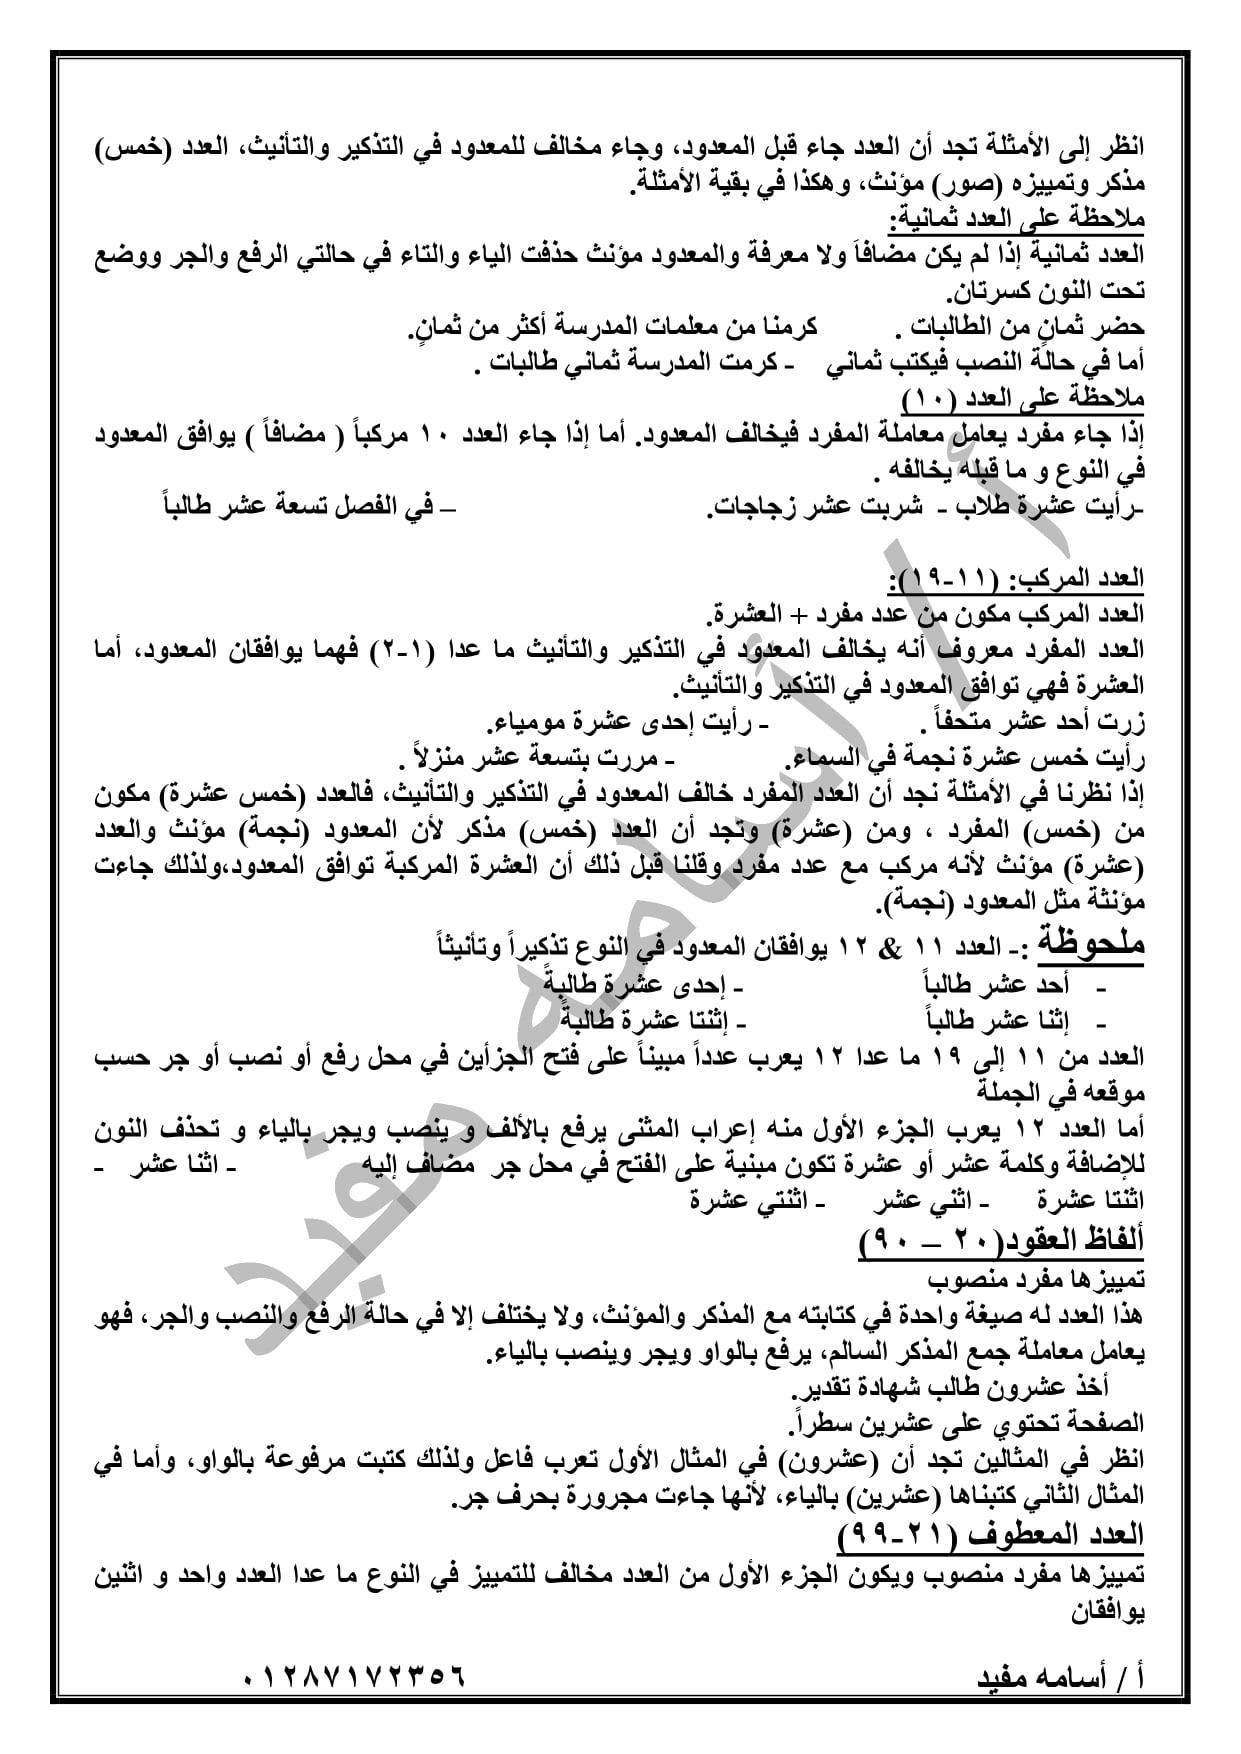 ملخص منهج شهر ابريل لغة عربية ( قراءة + نصوص + قصة + نحو ) للصف الثانى الاعدادى ترم ثاني 15